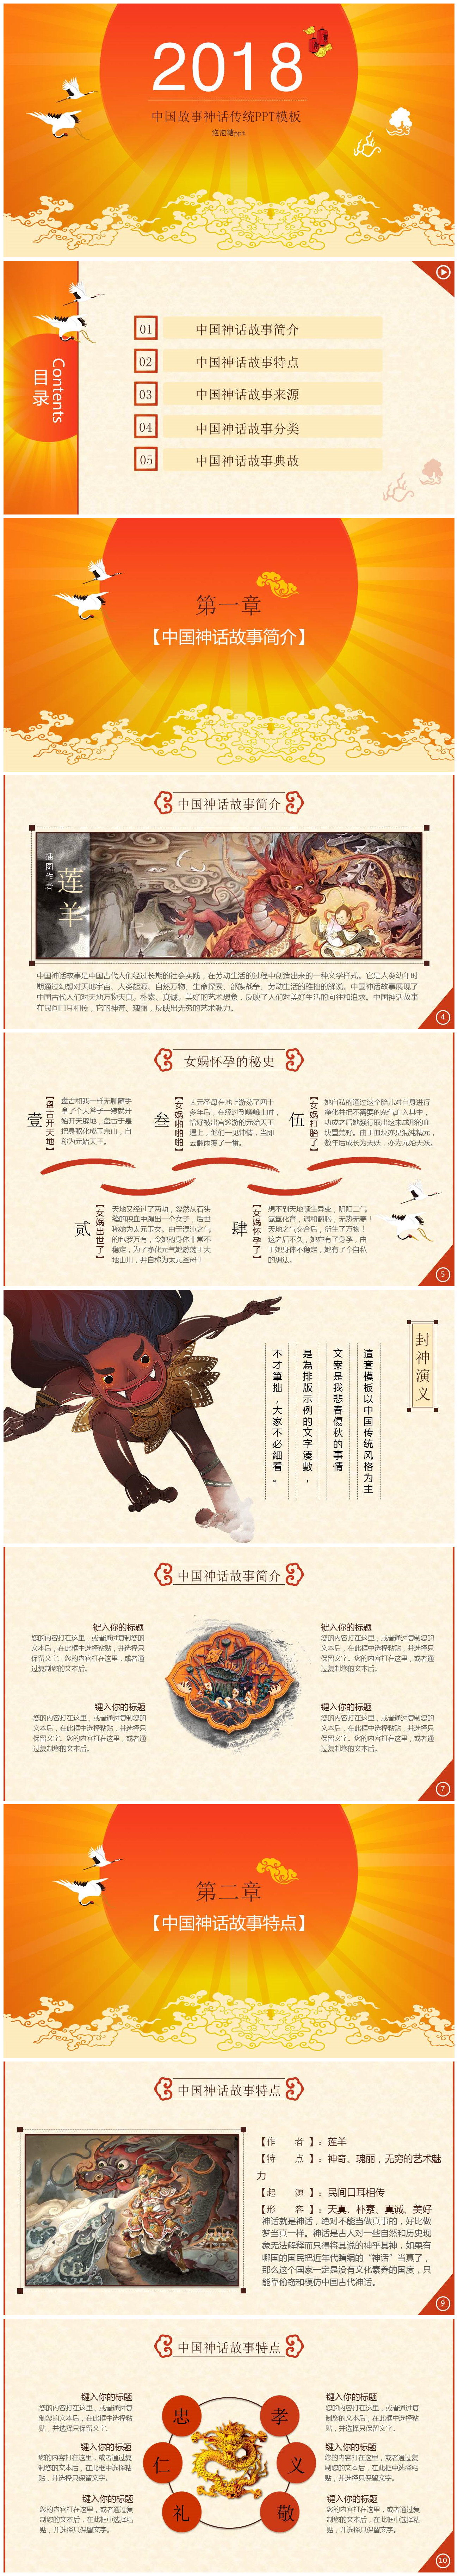 中国故事神话传统PPT模板-聚给网